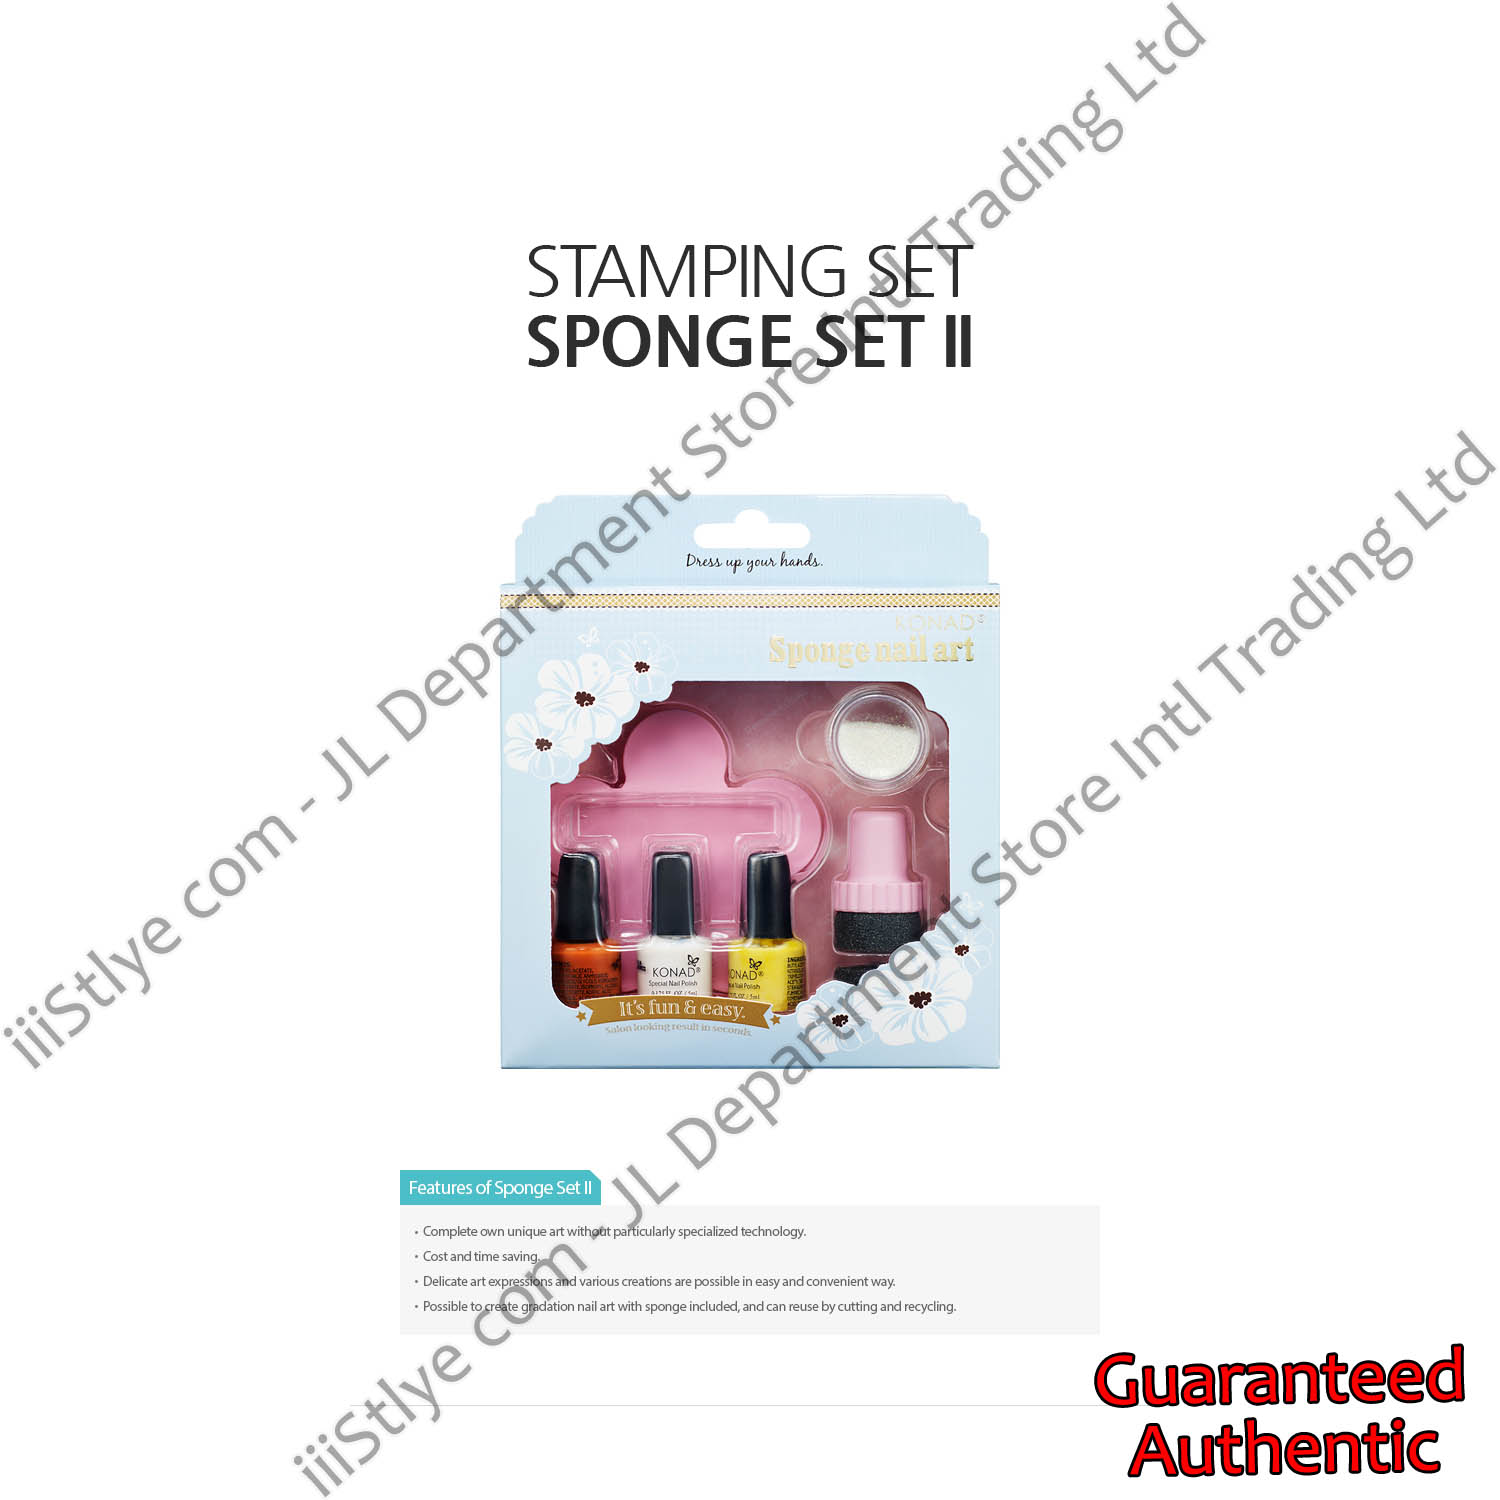 stamping set sponge set II